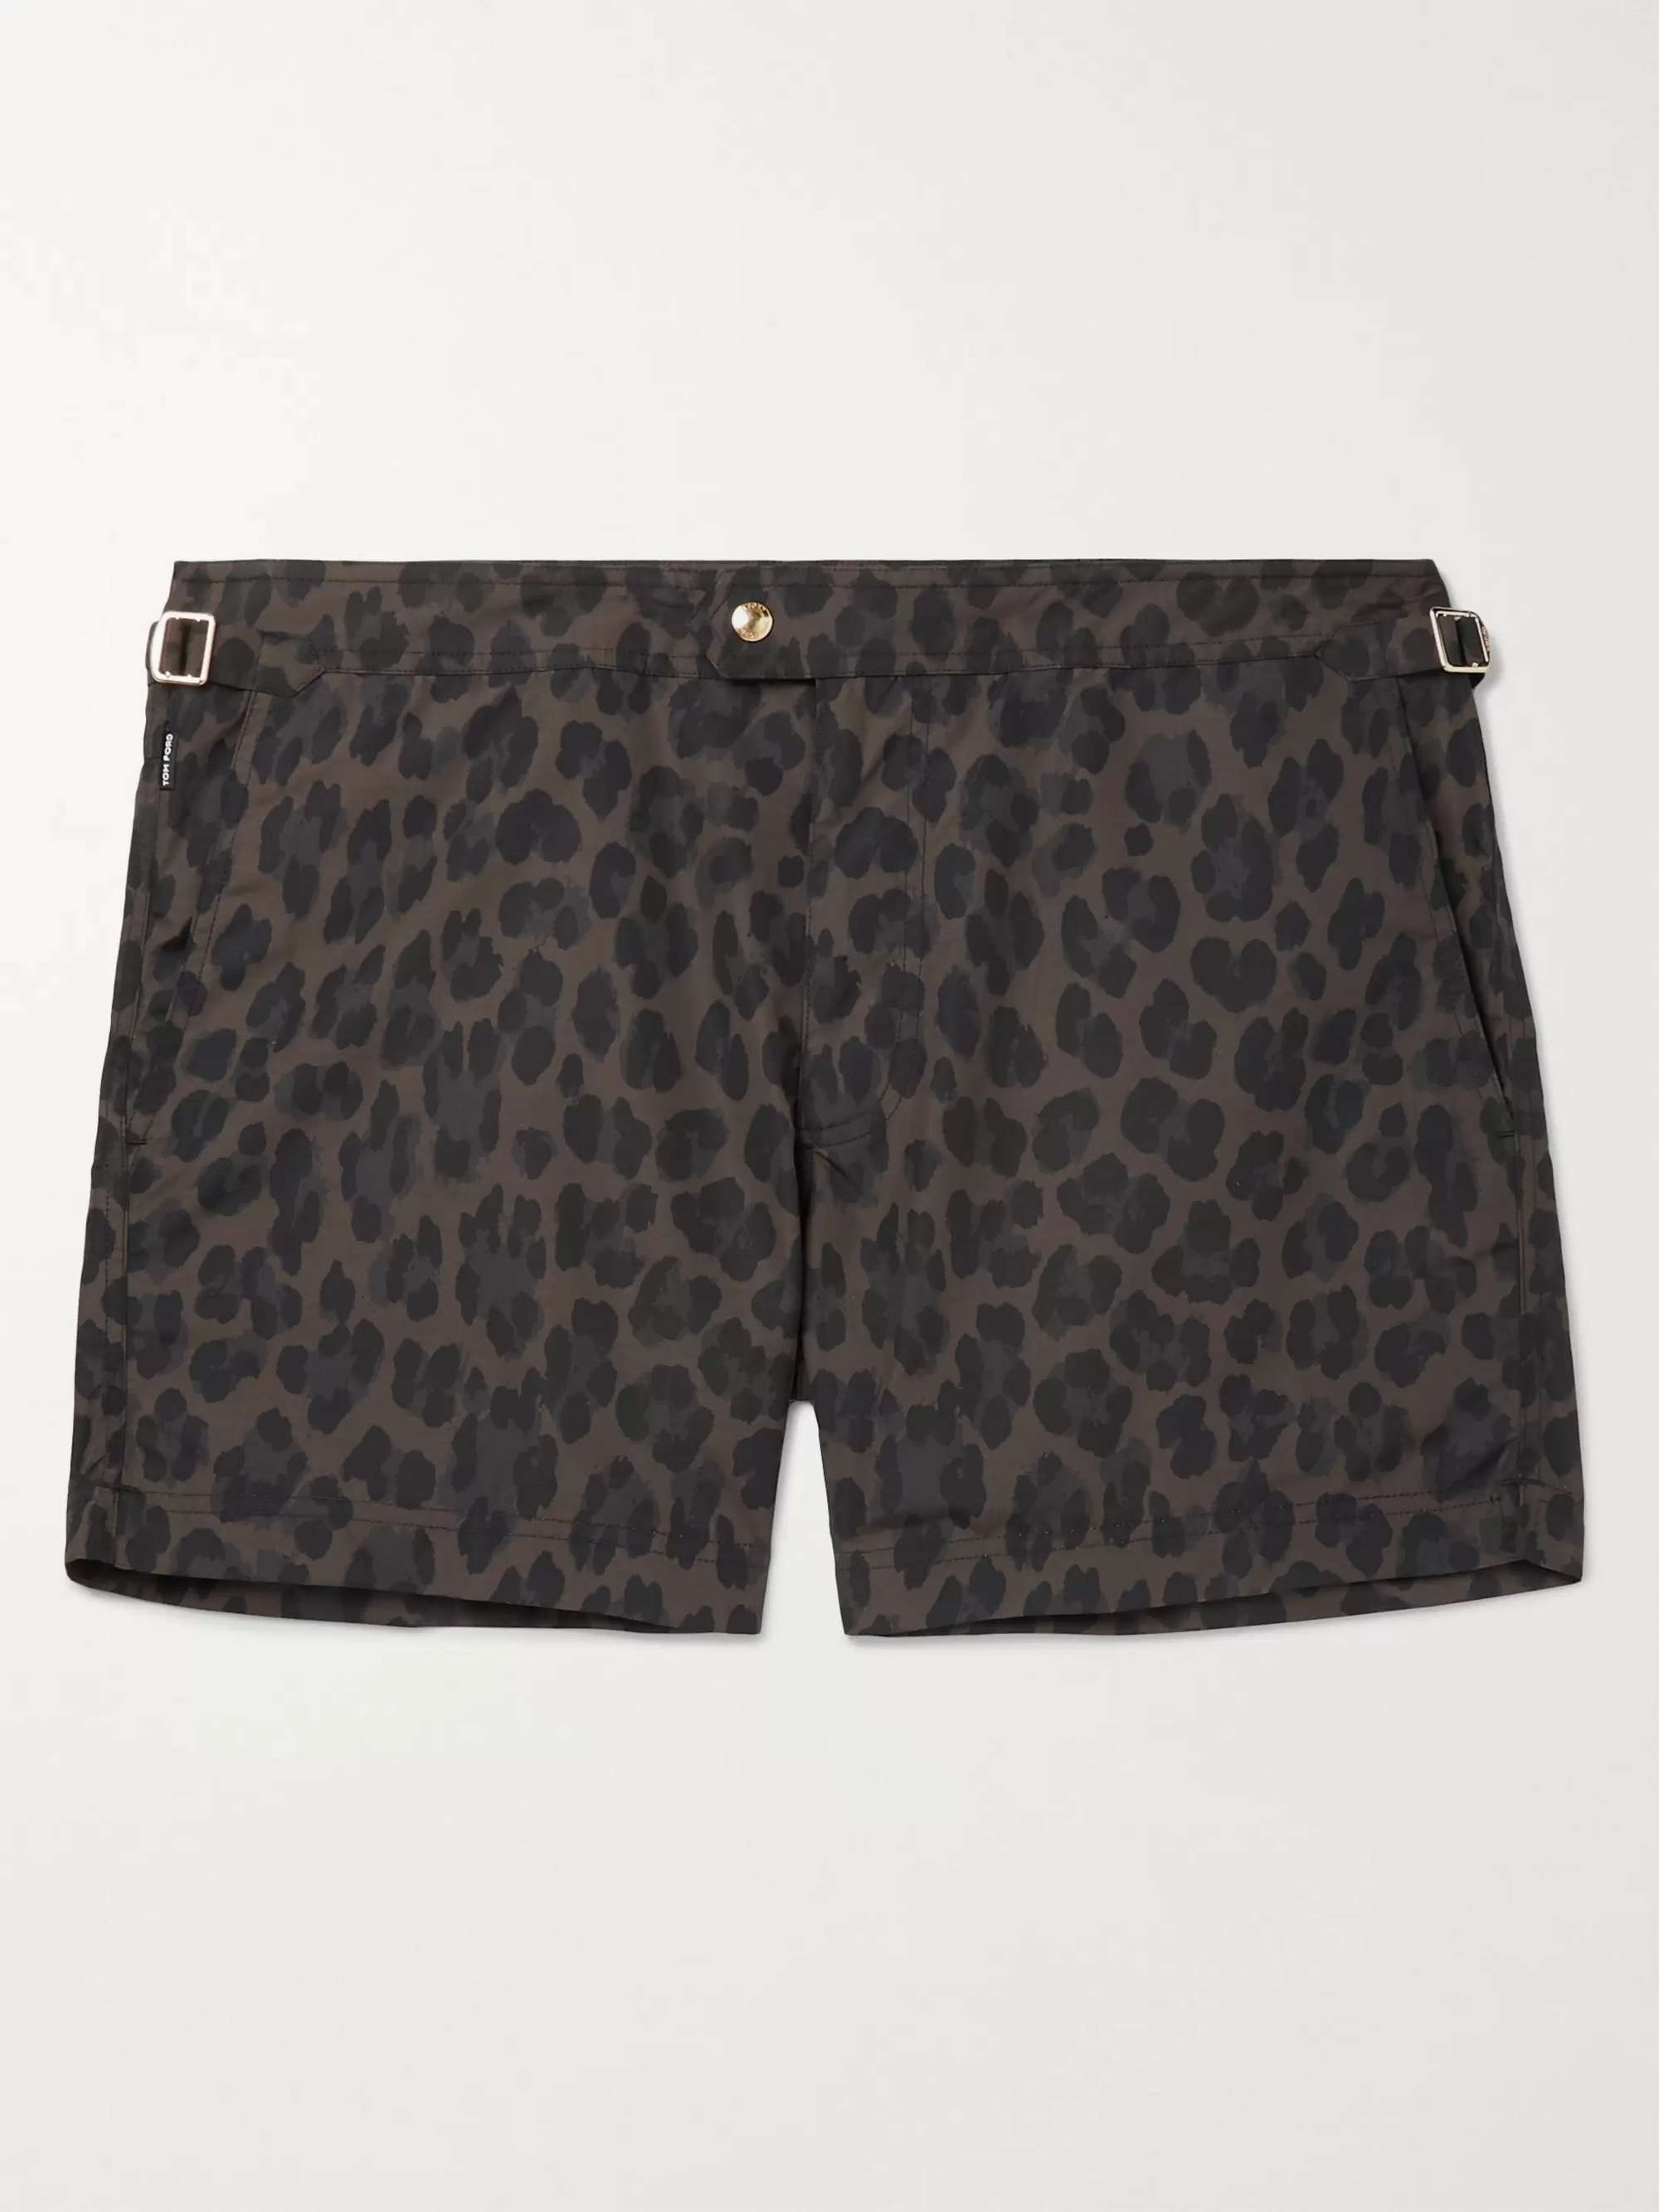 TOM FORD Slim-Fit Short-Length Leopard-Print Swim Shorts for Men | MR PORTER